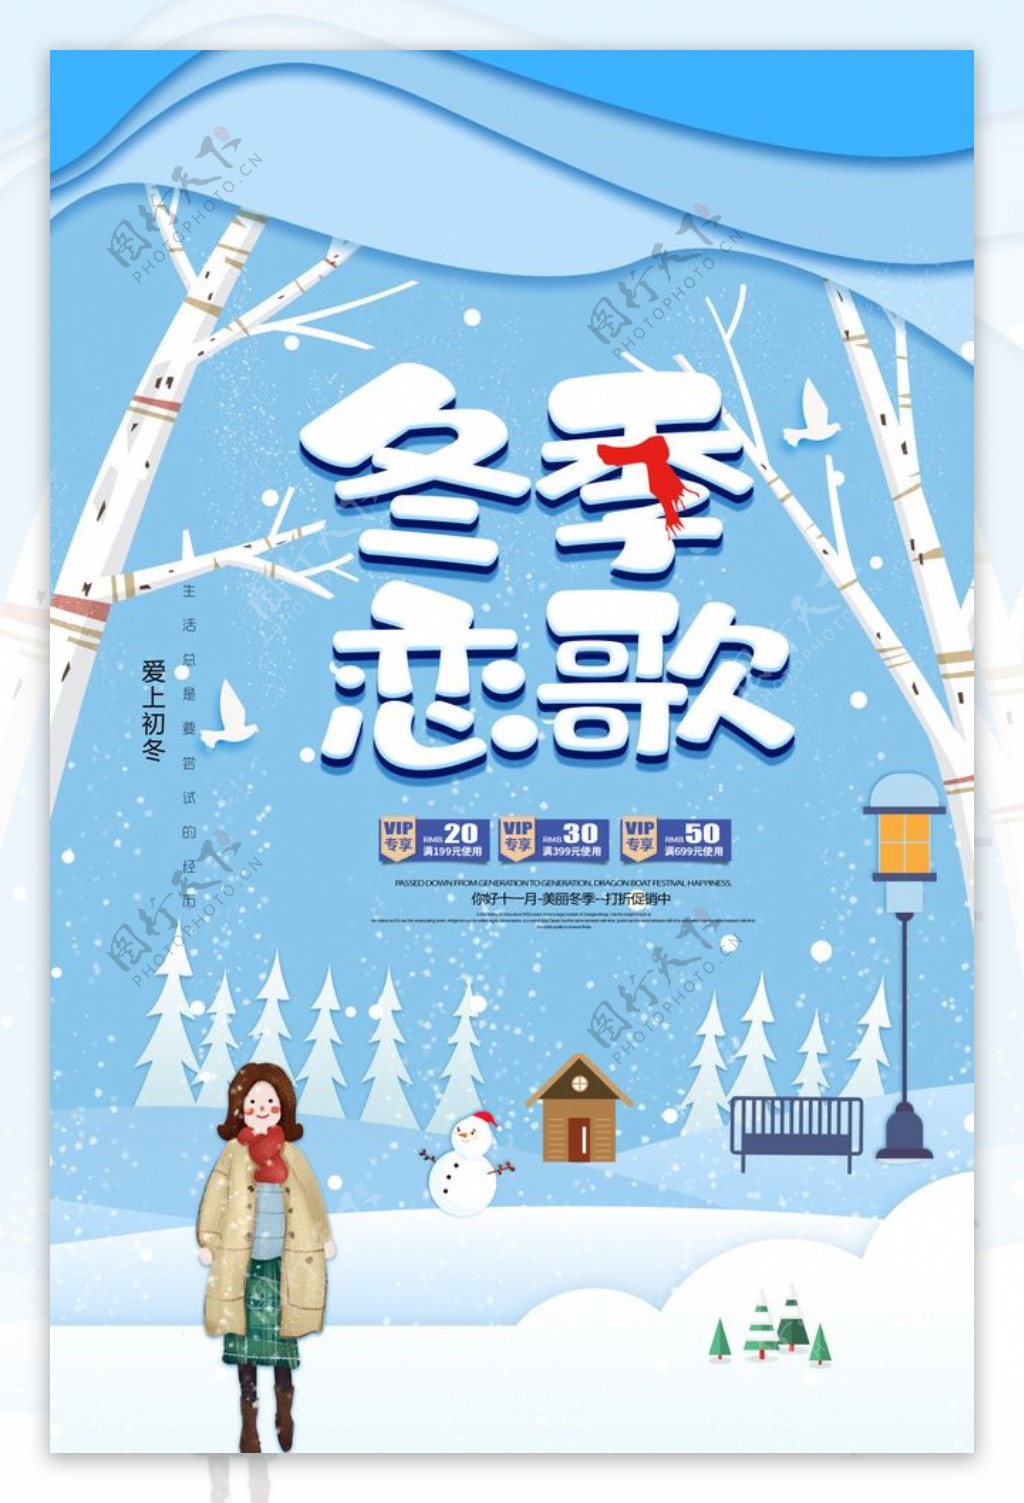 冬季恋歌促销宣传单PSD素材